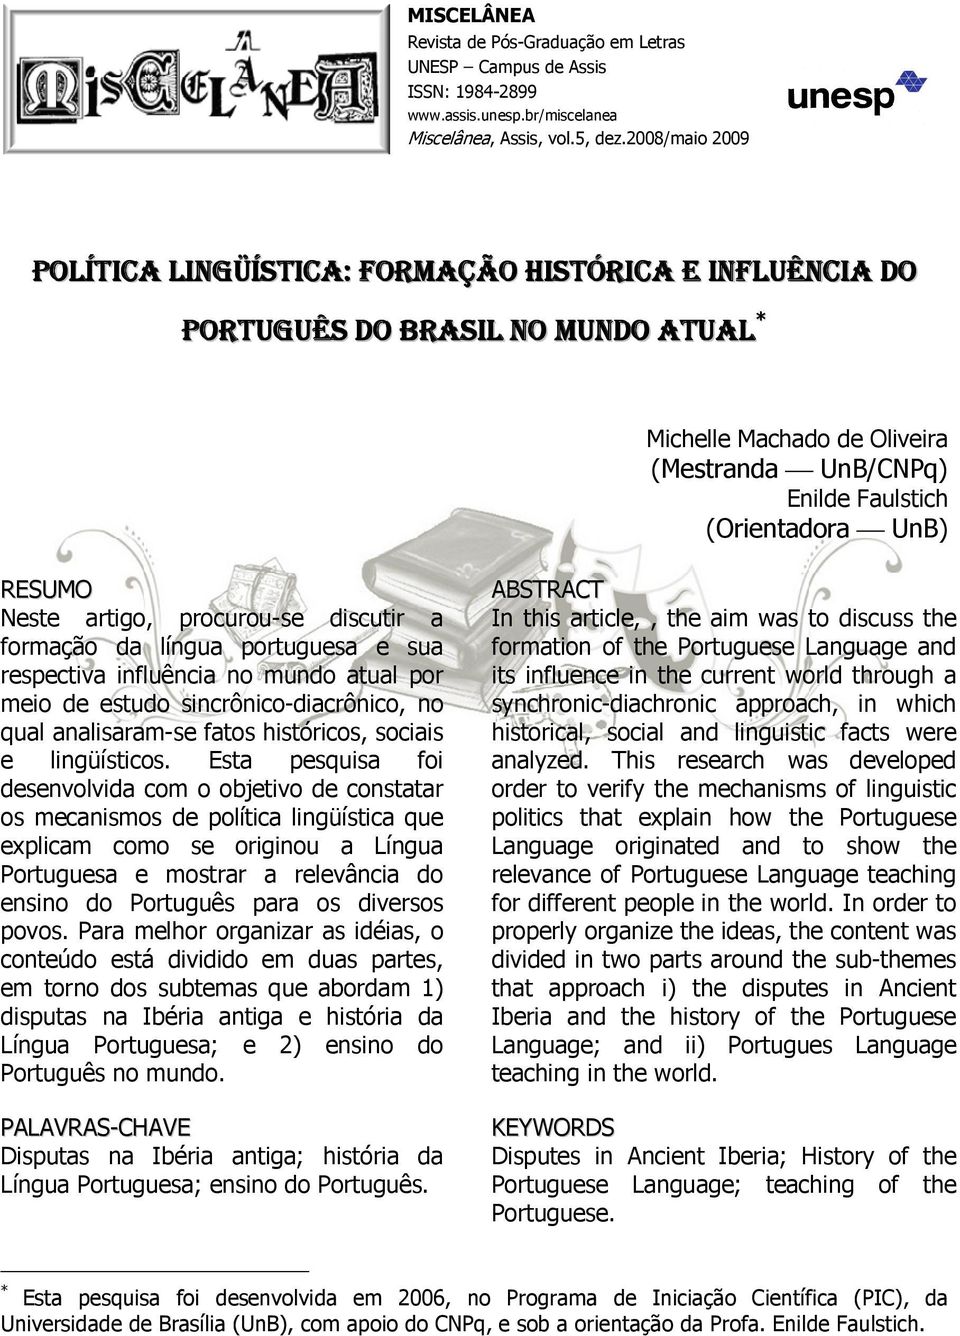 Neste artigo, procurou-se discutir a formação da língua portuguesa e sua respectiva influência no mundo atual por meio de estudo sincrônico-diacrônico, no qual analisaram-se fatos históricos, sociais